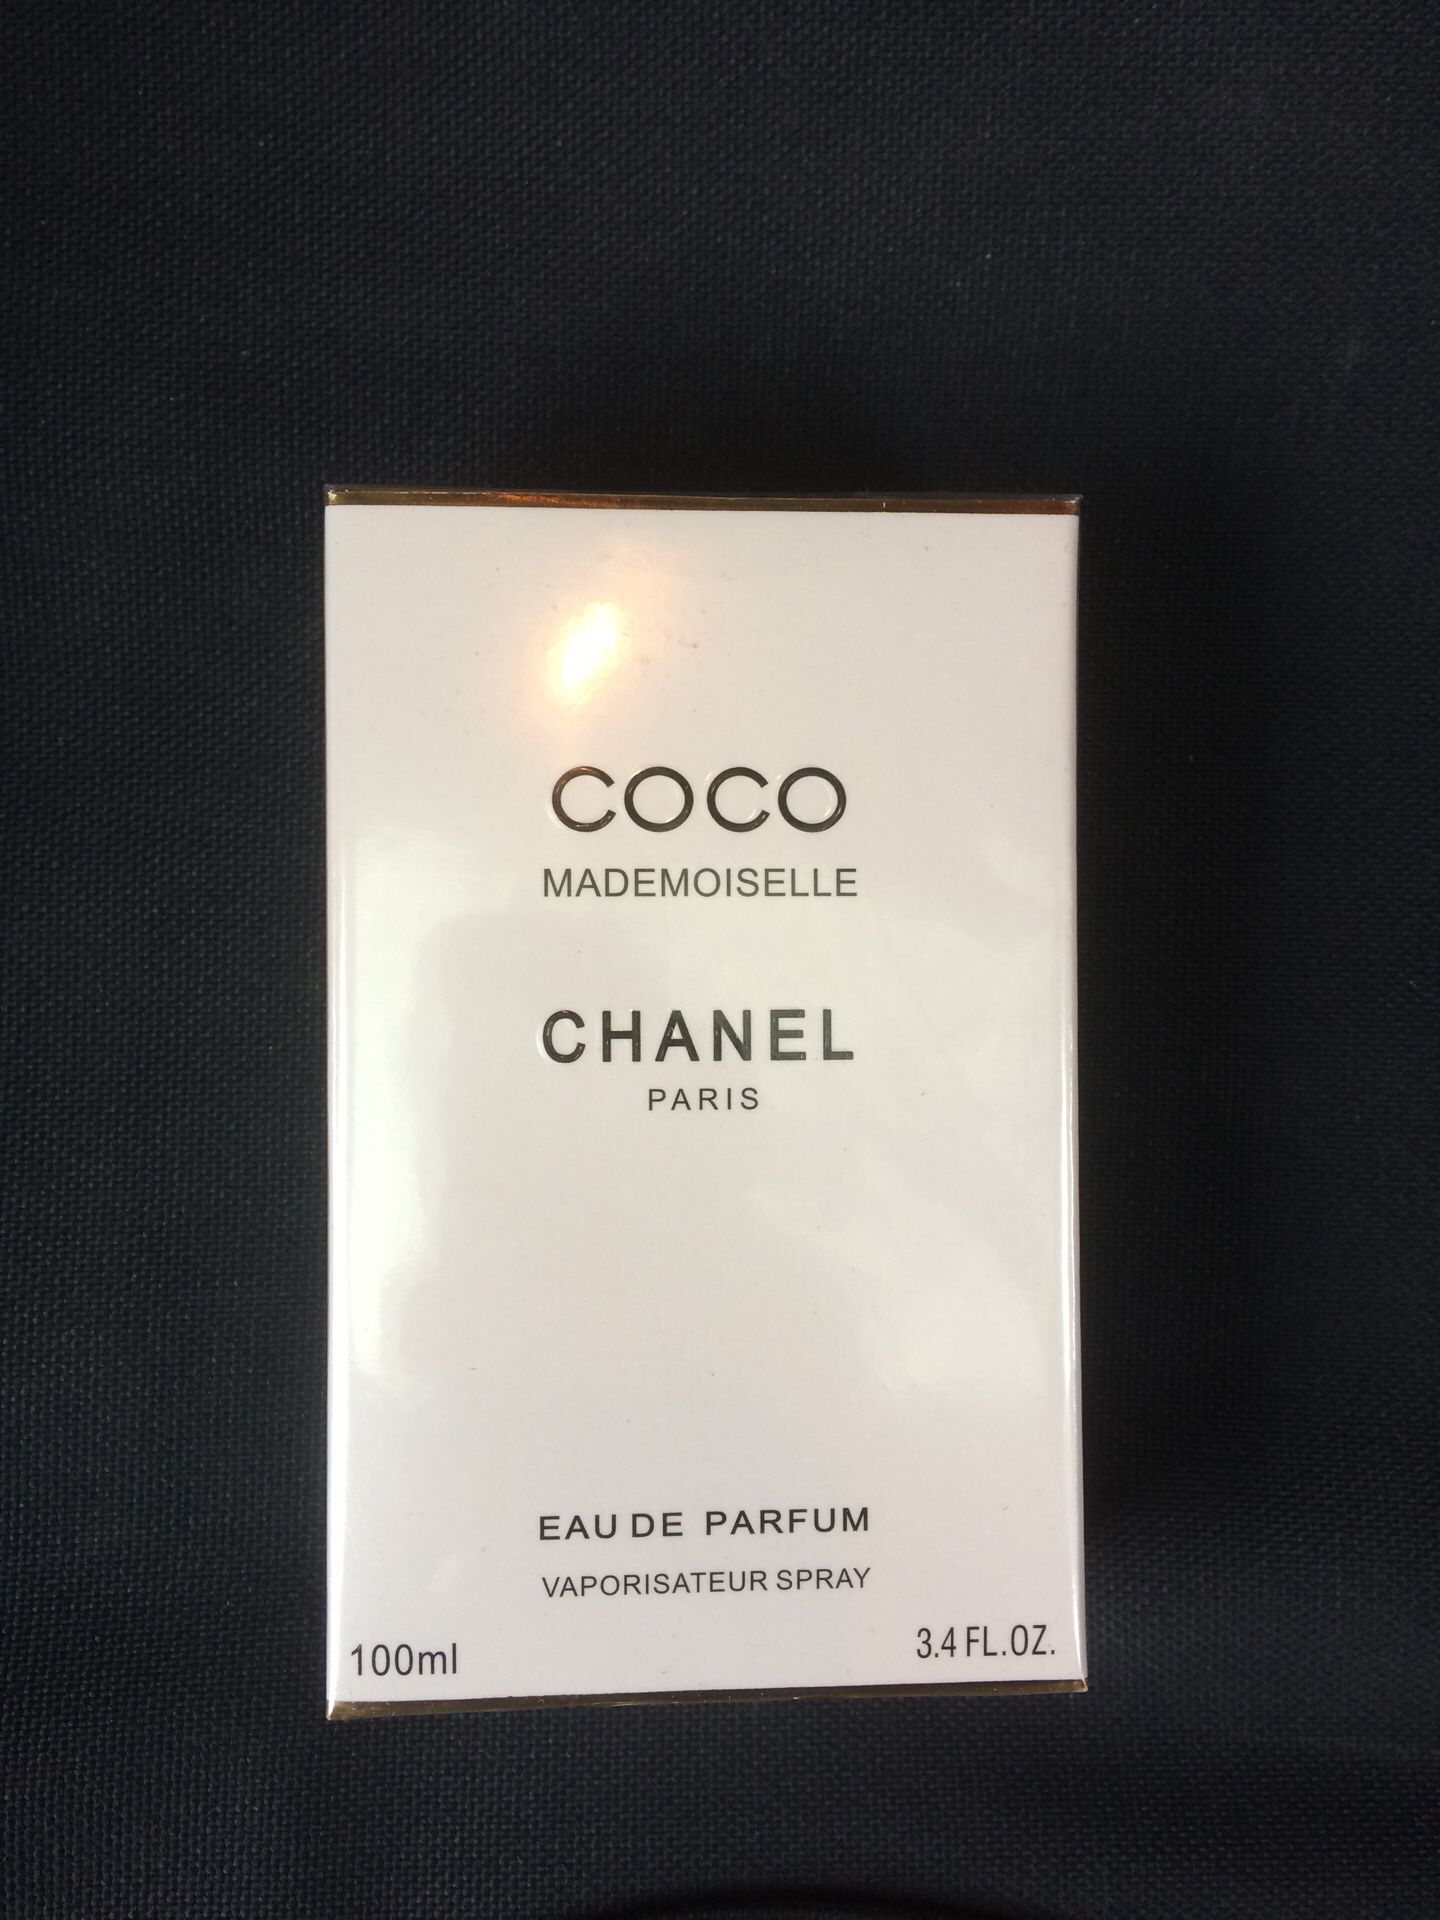 ORIGINAL Coco Chanel Mademoiselle for Sale in Boston, MA